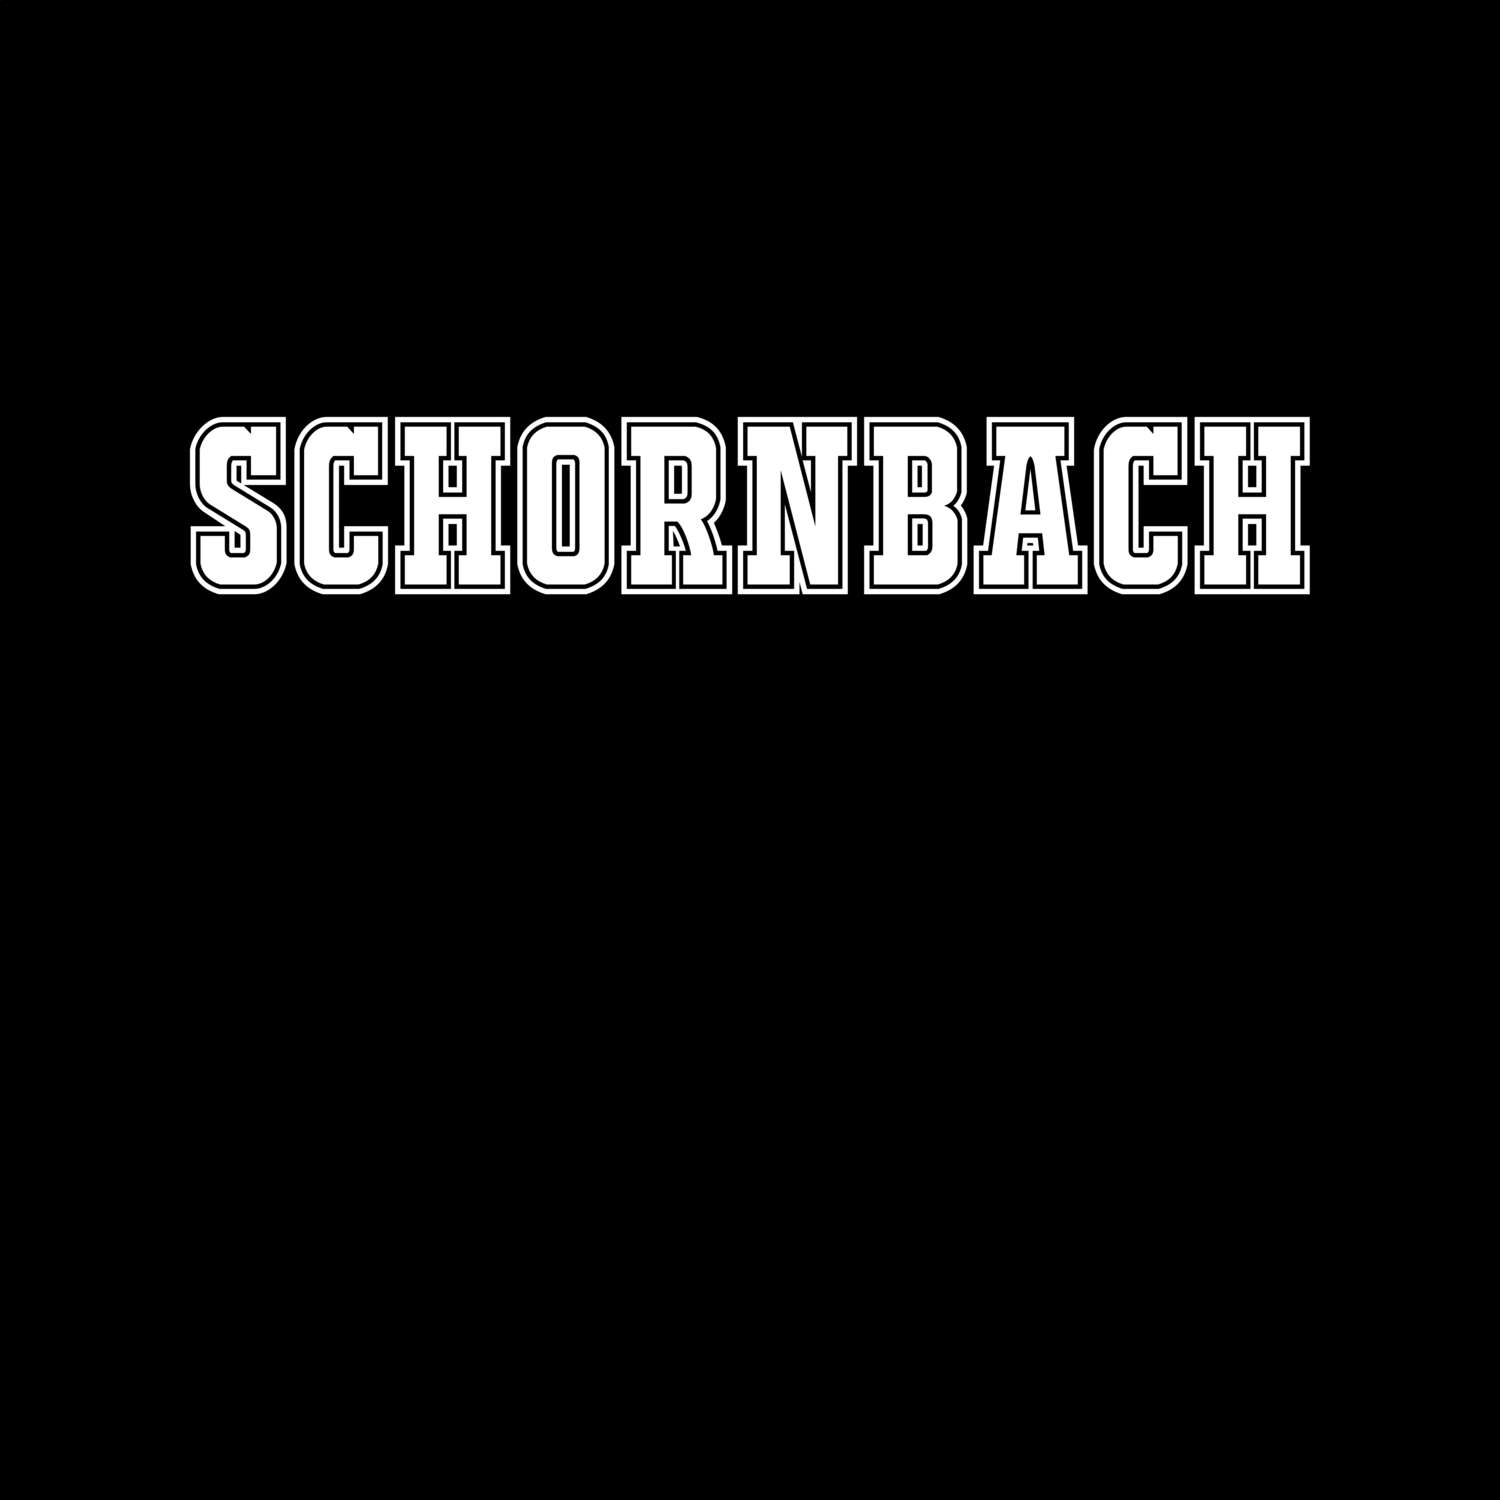 Schornbach T-Shirt »Classic«